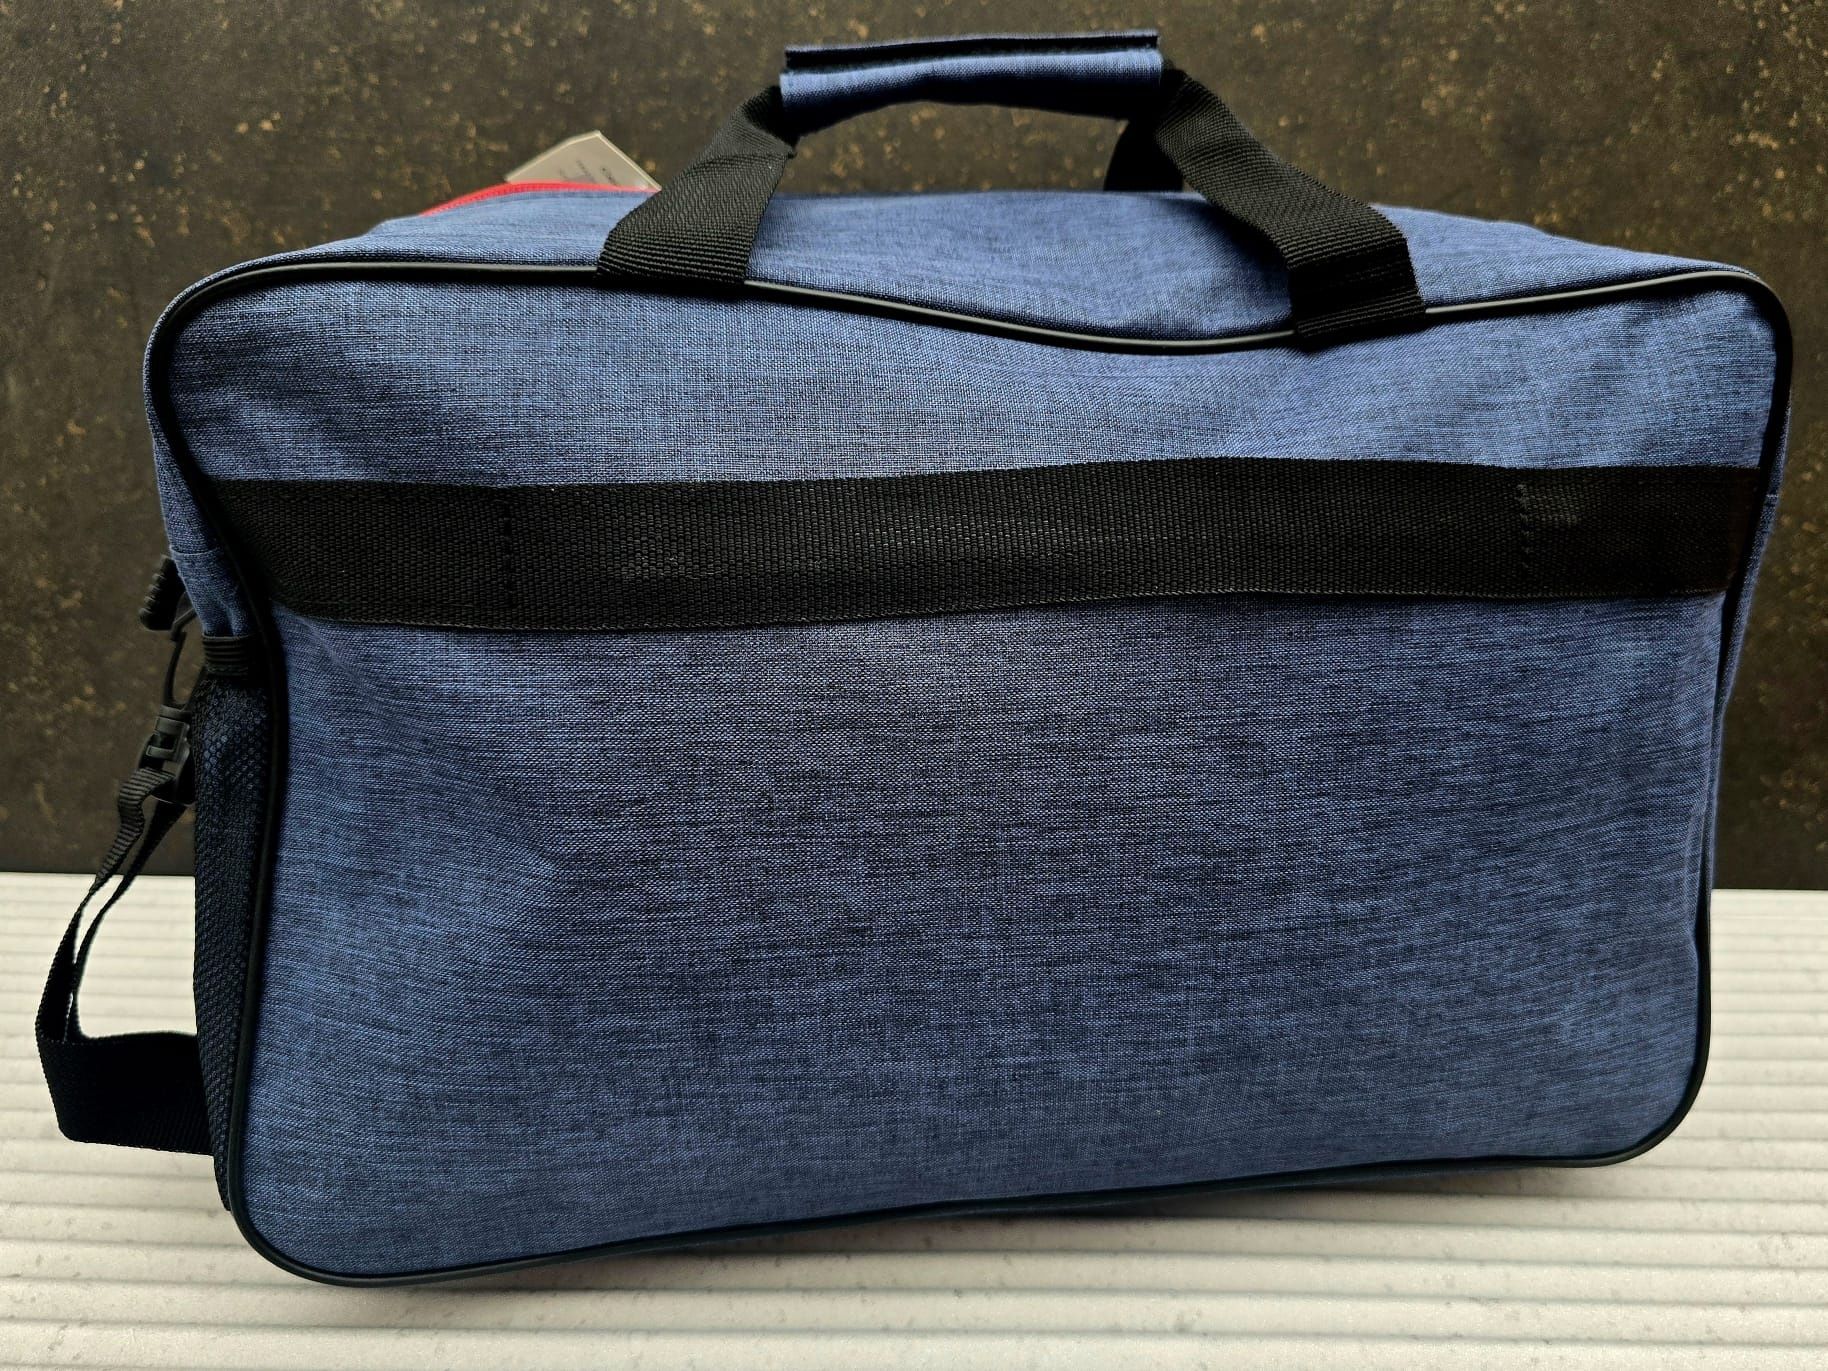 Nowa torba podróżna marki Bugiani niebieska wymiary 40x25x20